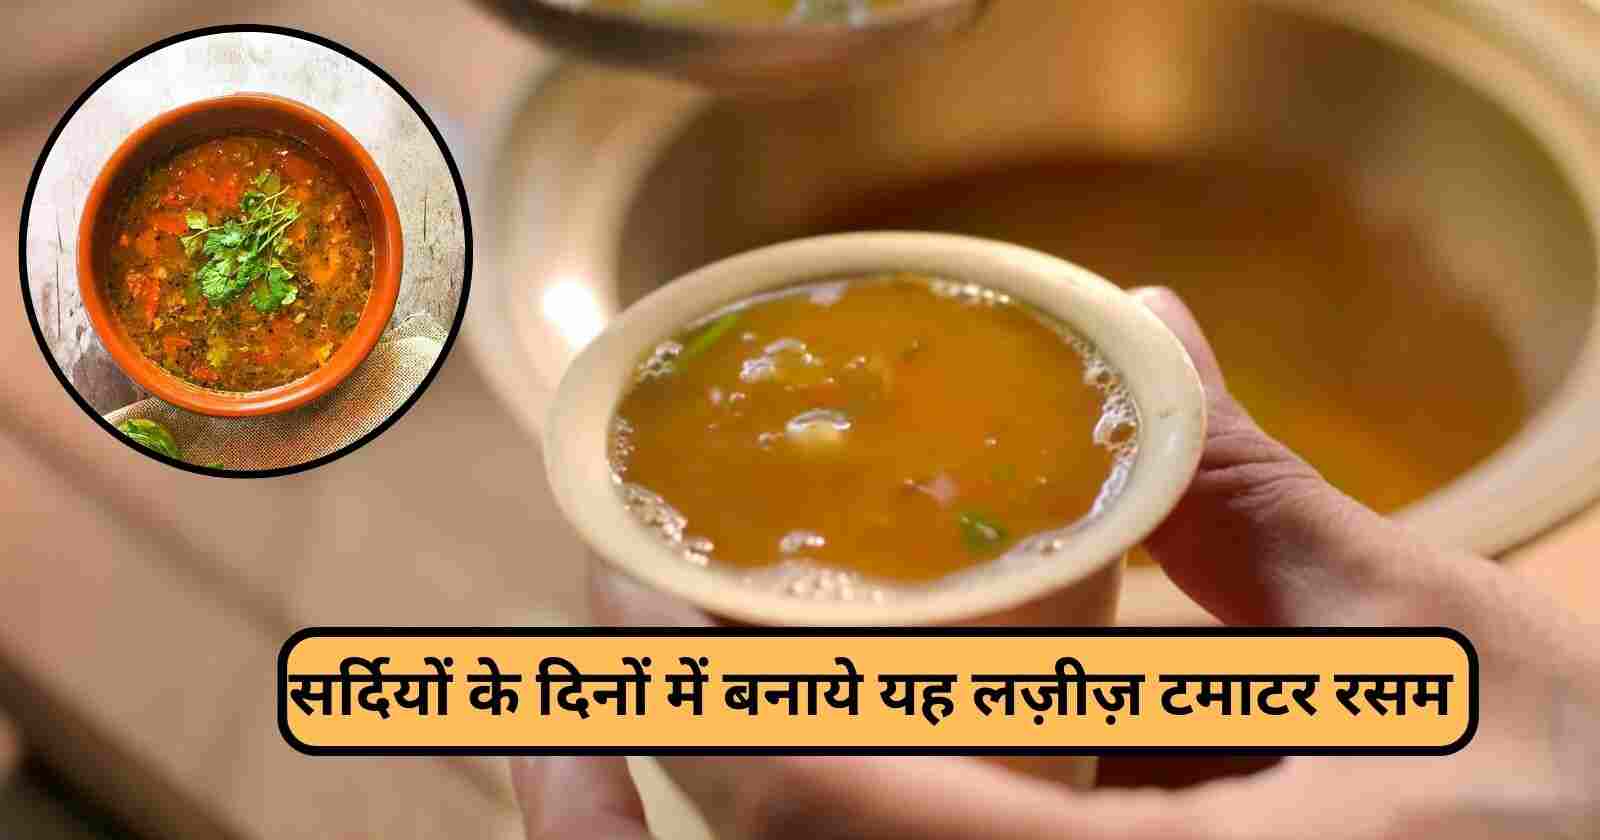 Tomato Rasam Recipe In Hindi: साउथ का फेमस रसम बनाने की सबसे आसान विधि hinditonews.in